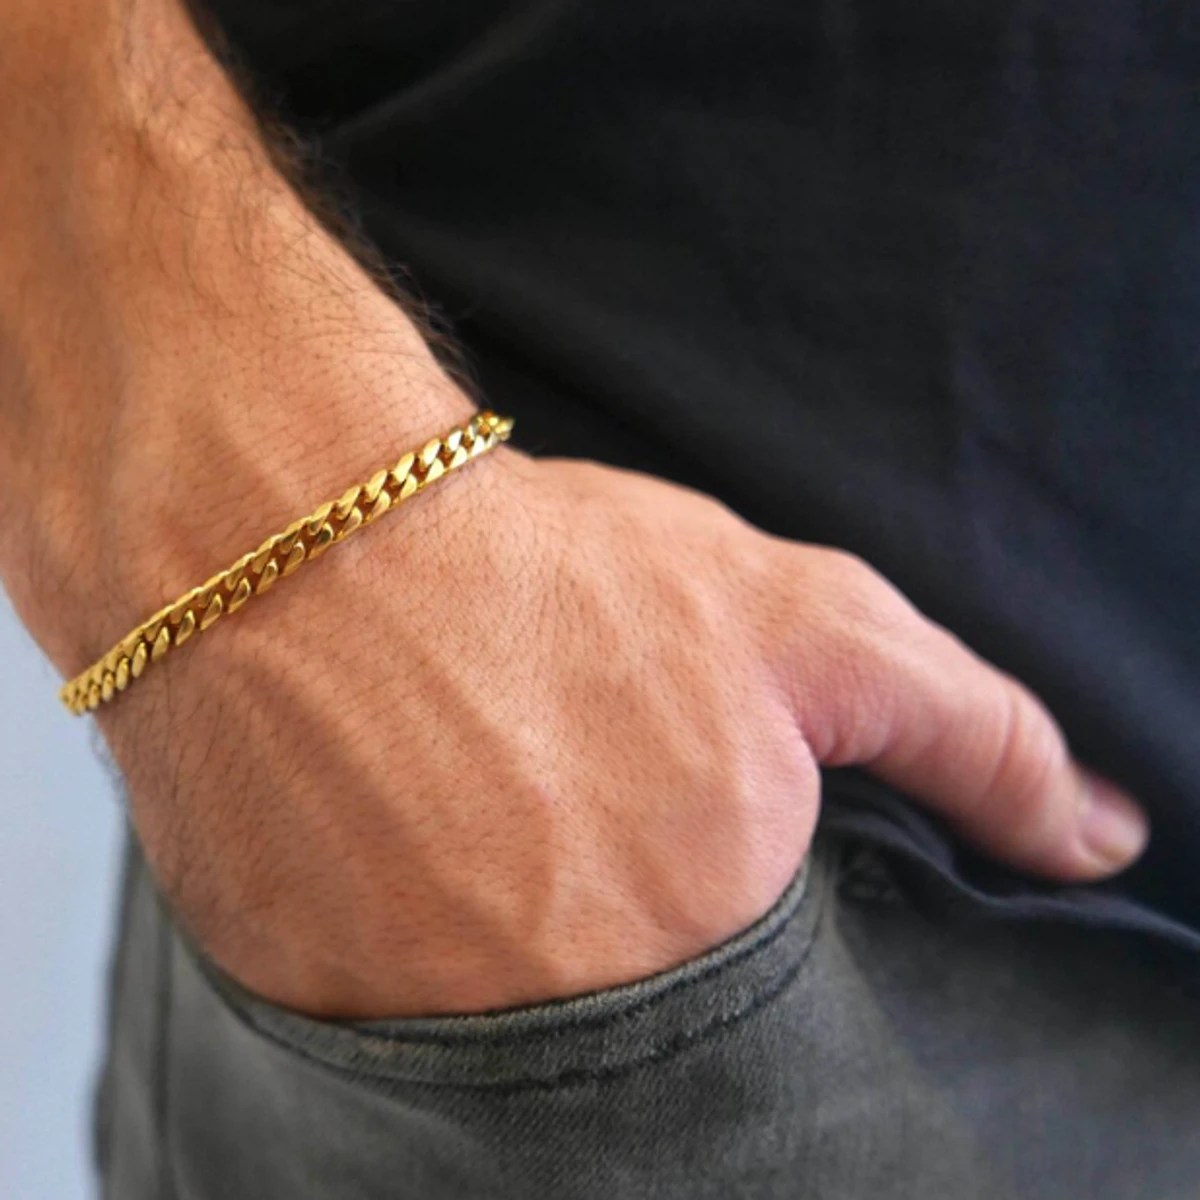 Fashionable Men's Gold Chain Bracelet